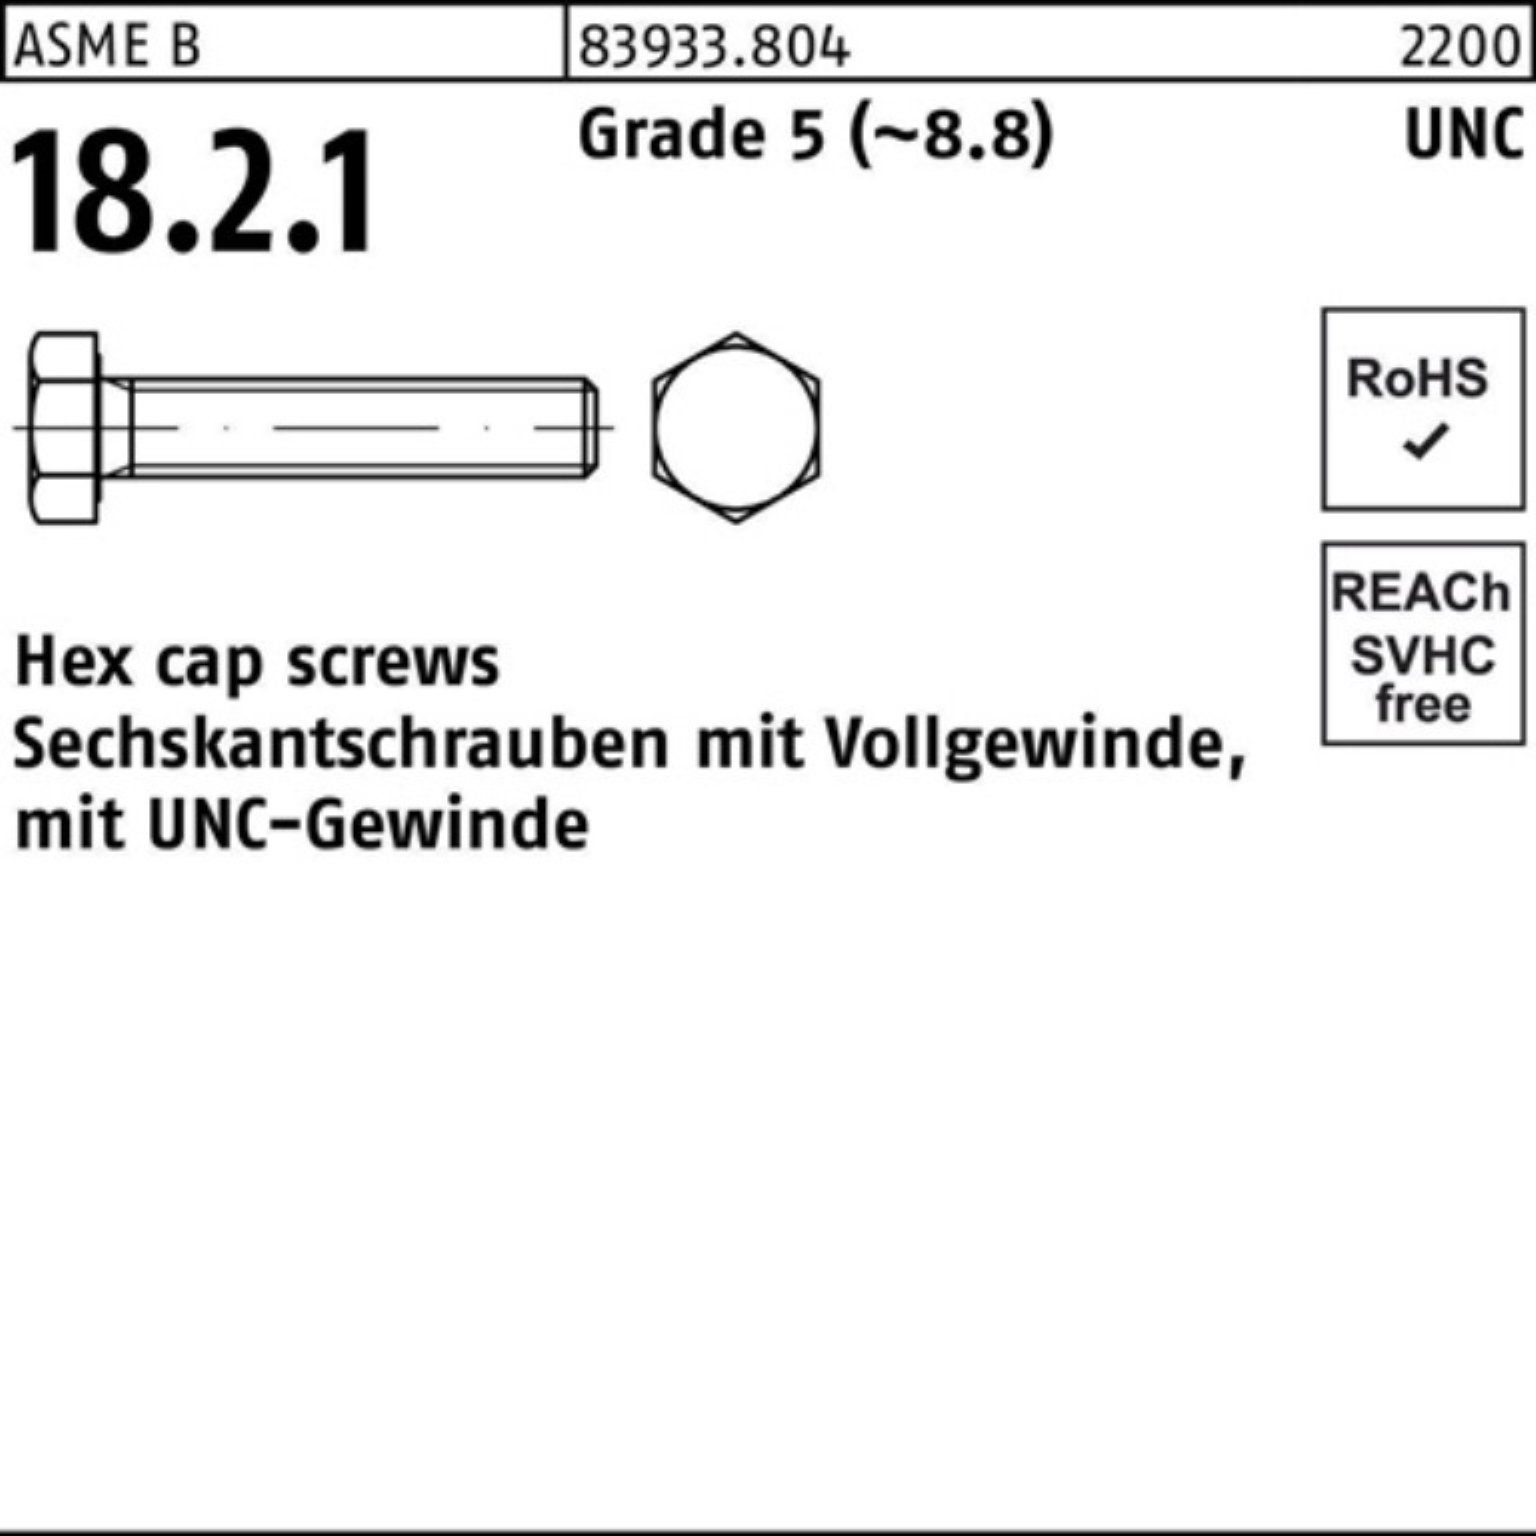 Sechskantschraube Grade (8 7/8x 83933 R Pack 100er Sechskantschraube VG 5 Reyher 5 UNC-Gewinde